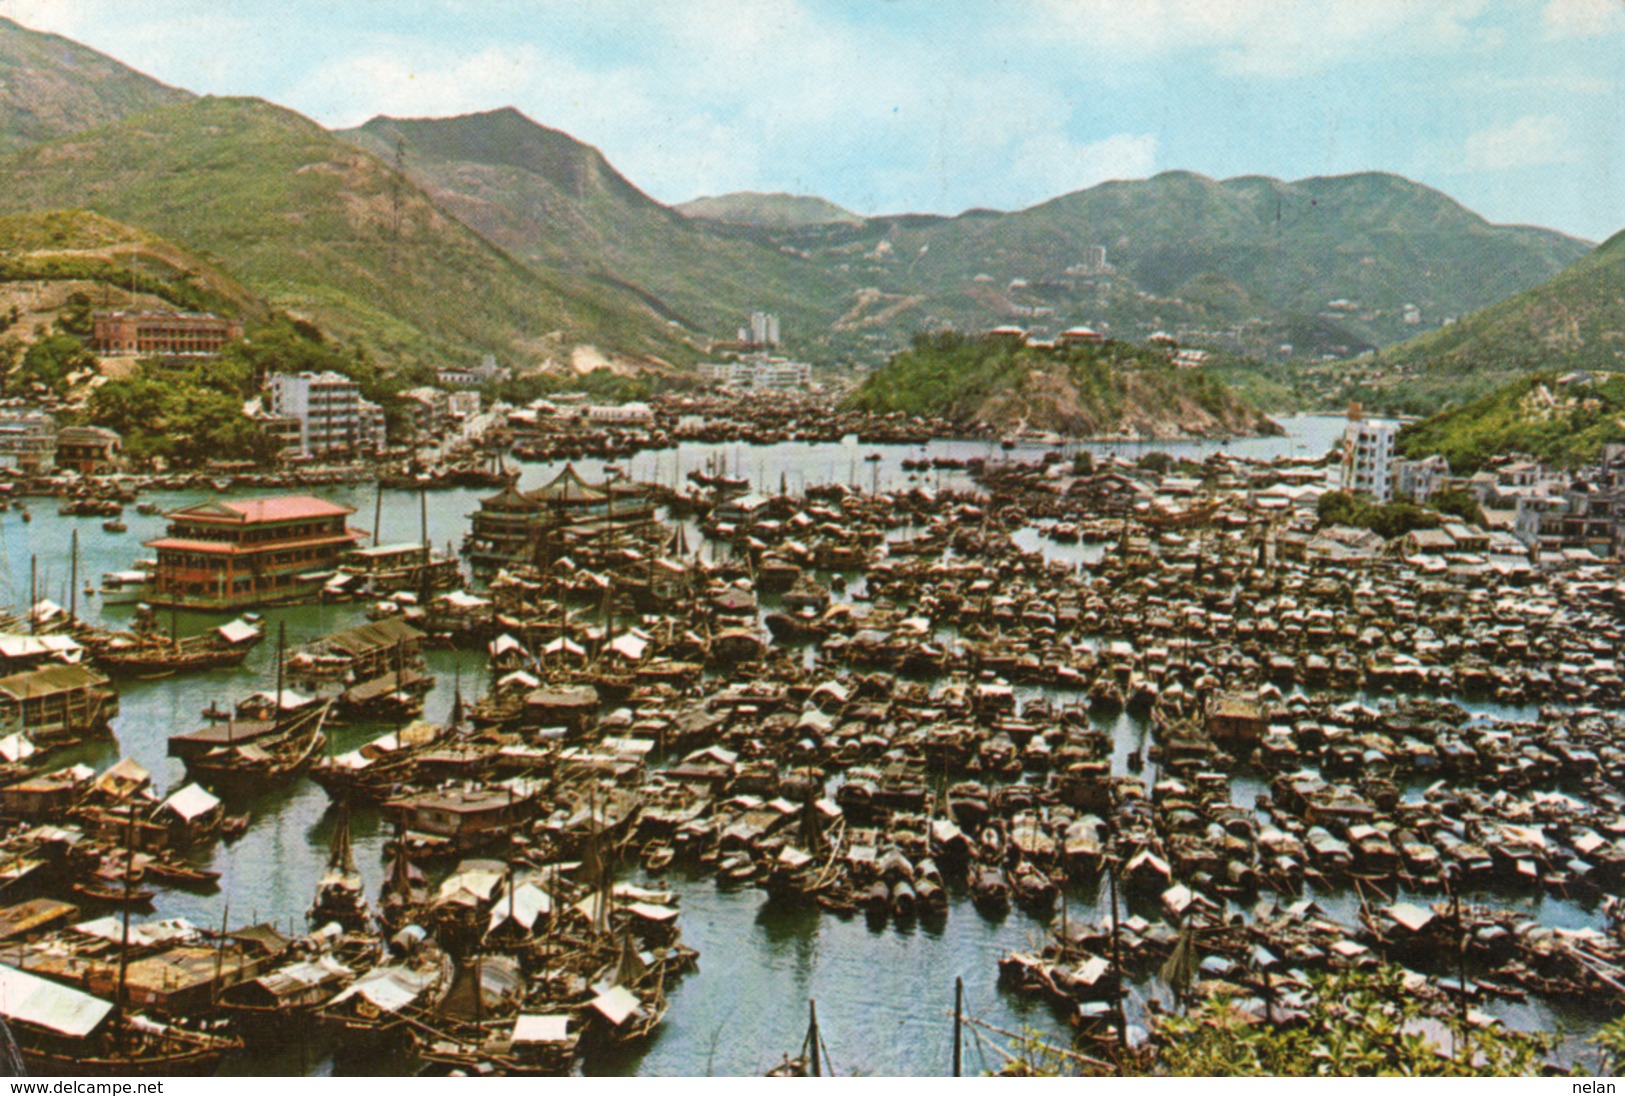 ABERDEEN-THE FAMOUS FISHING AREA OF HONG KONG- VIAGGIATA 1971 -F.G - Cina (Hong Kong)